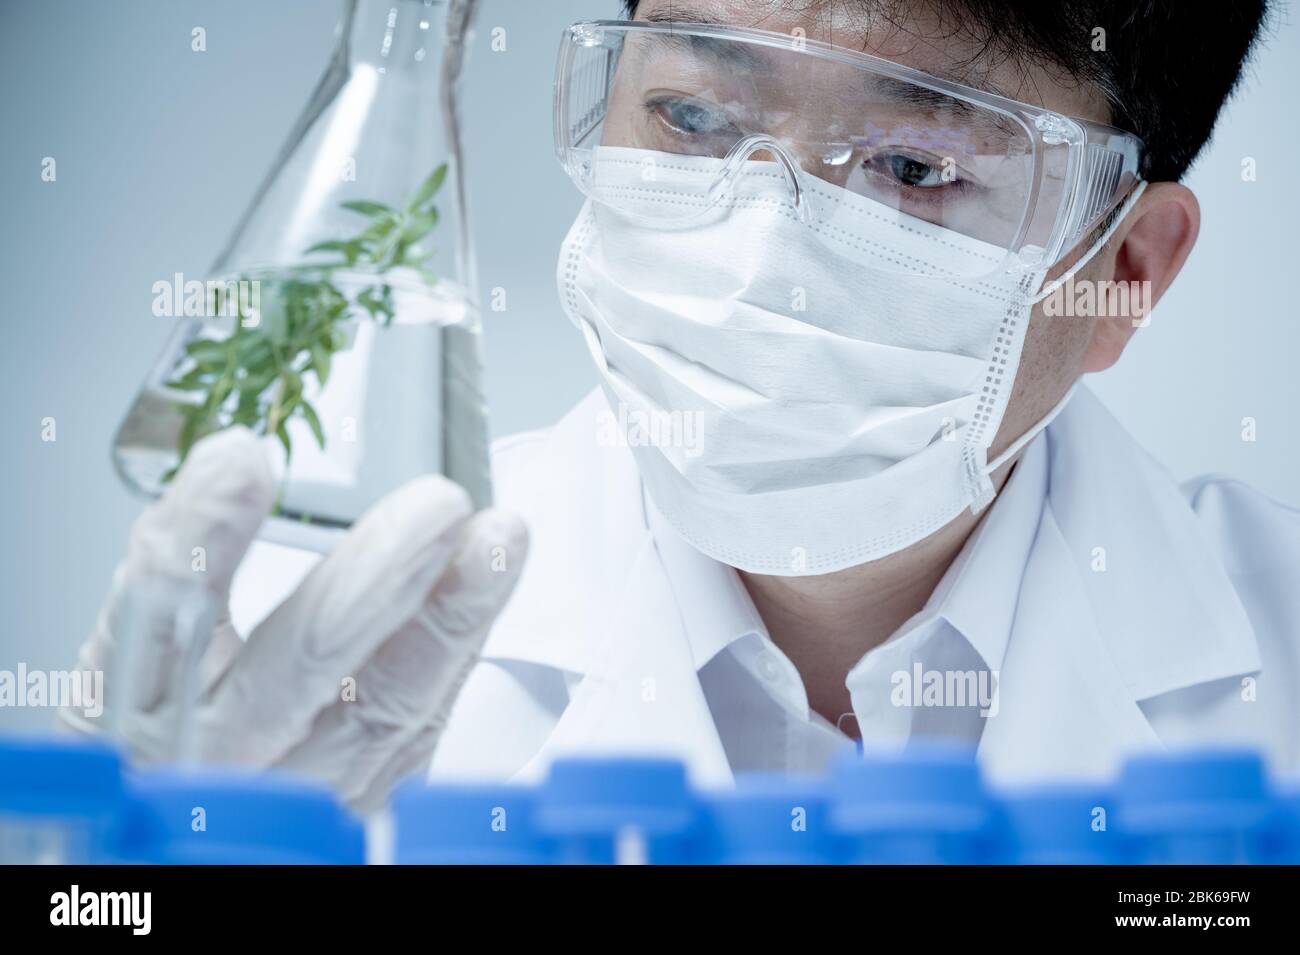 Chercheur asiatique de sexe masculin qui recherche des spécimens de plantes en laboratoire. Banque D'Images